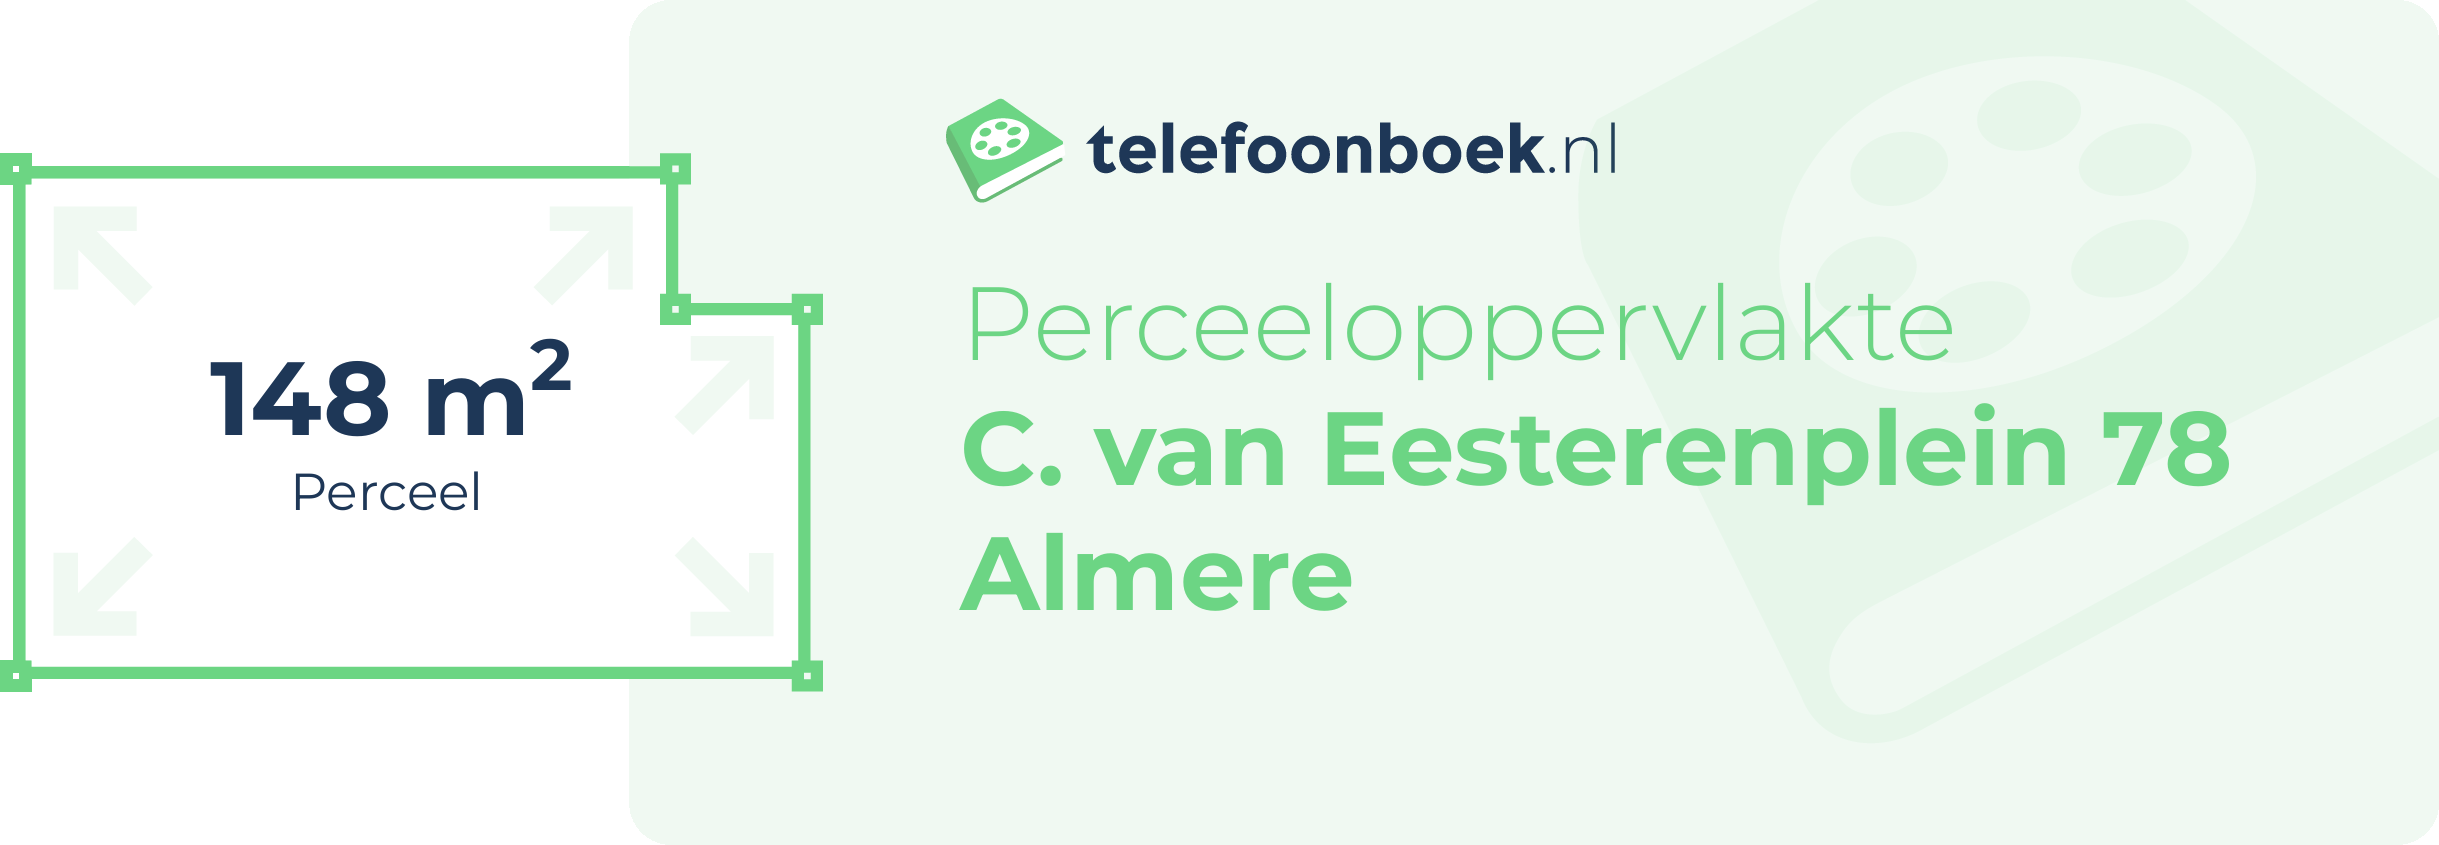 Perceeloppervlakte C. Van Eesterenplein 78 Almere